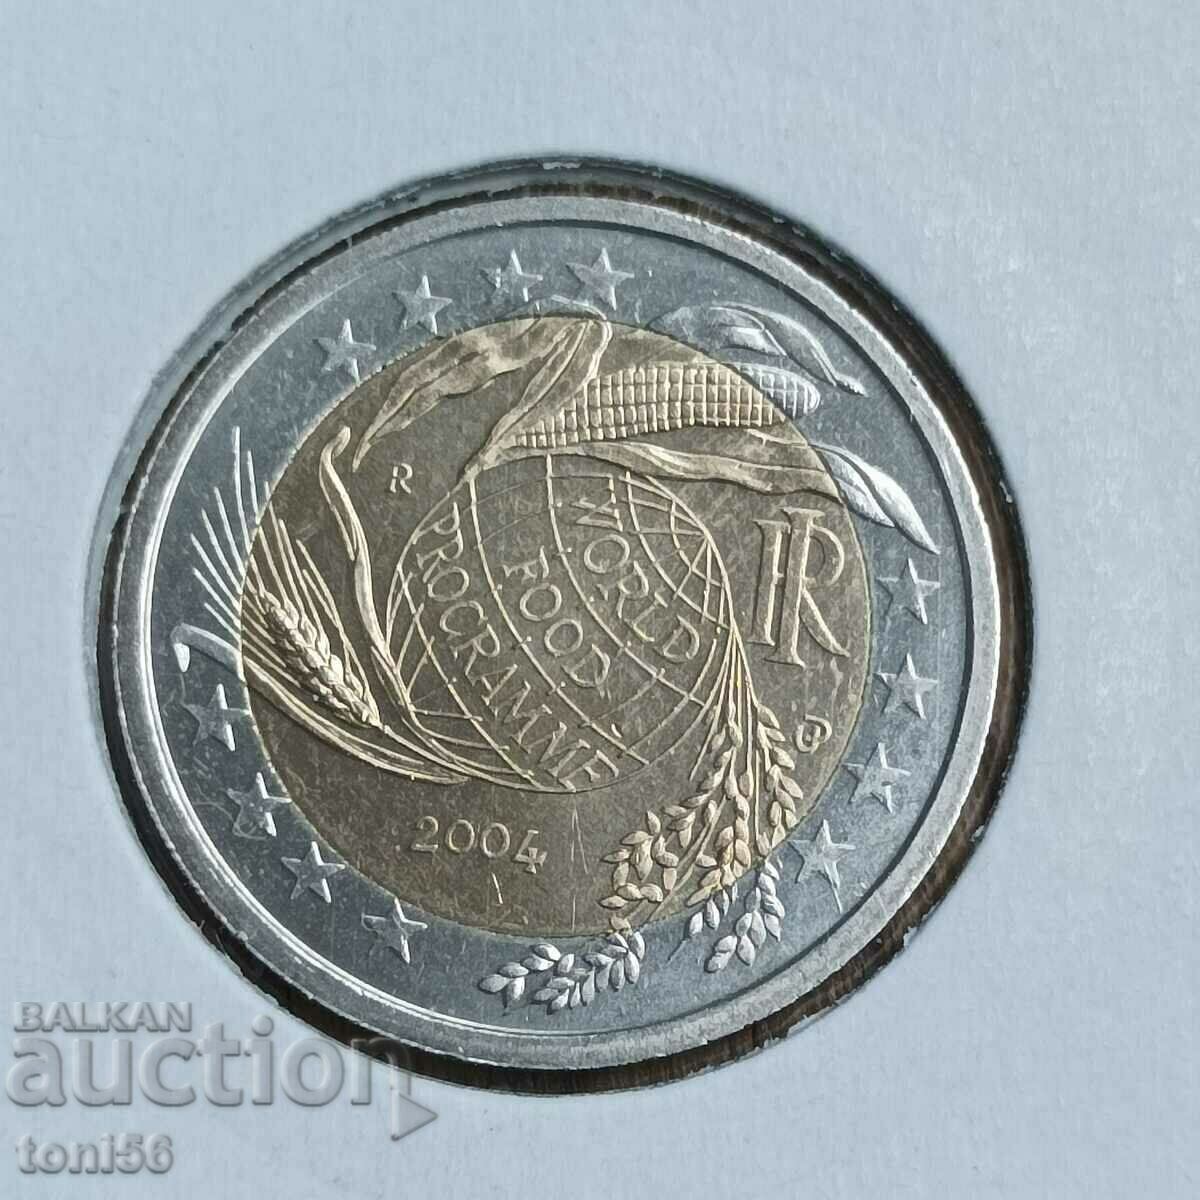 Ιταλία 2 ευρώ 2004 - FAO